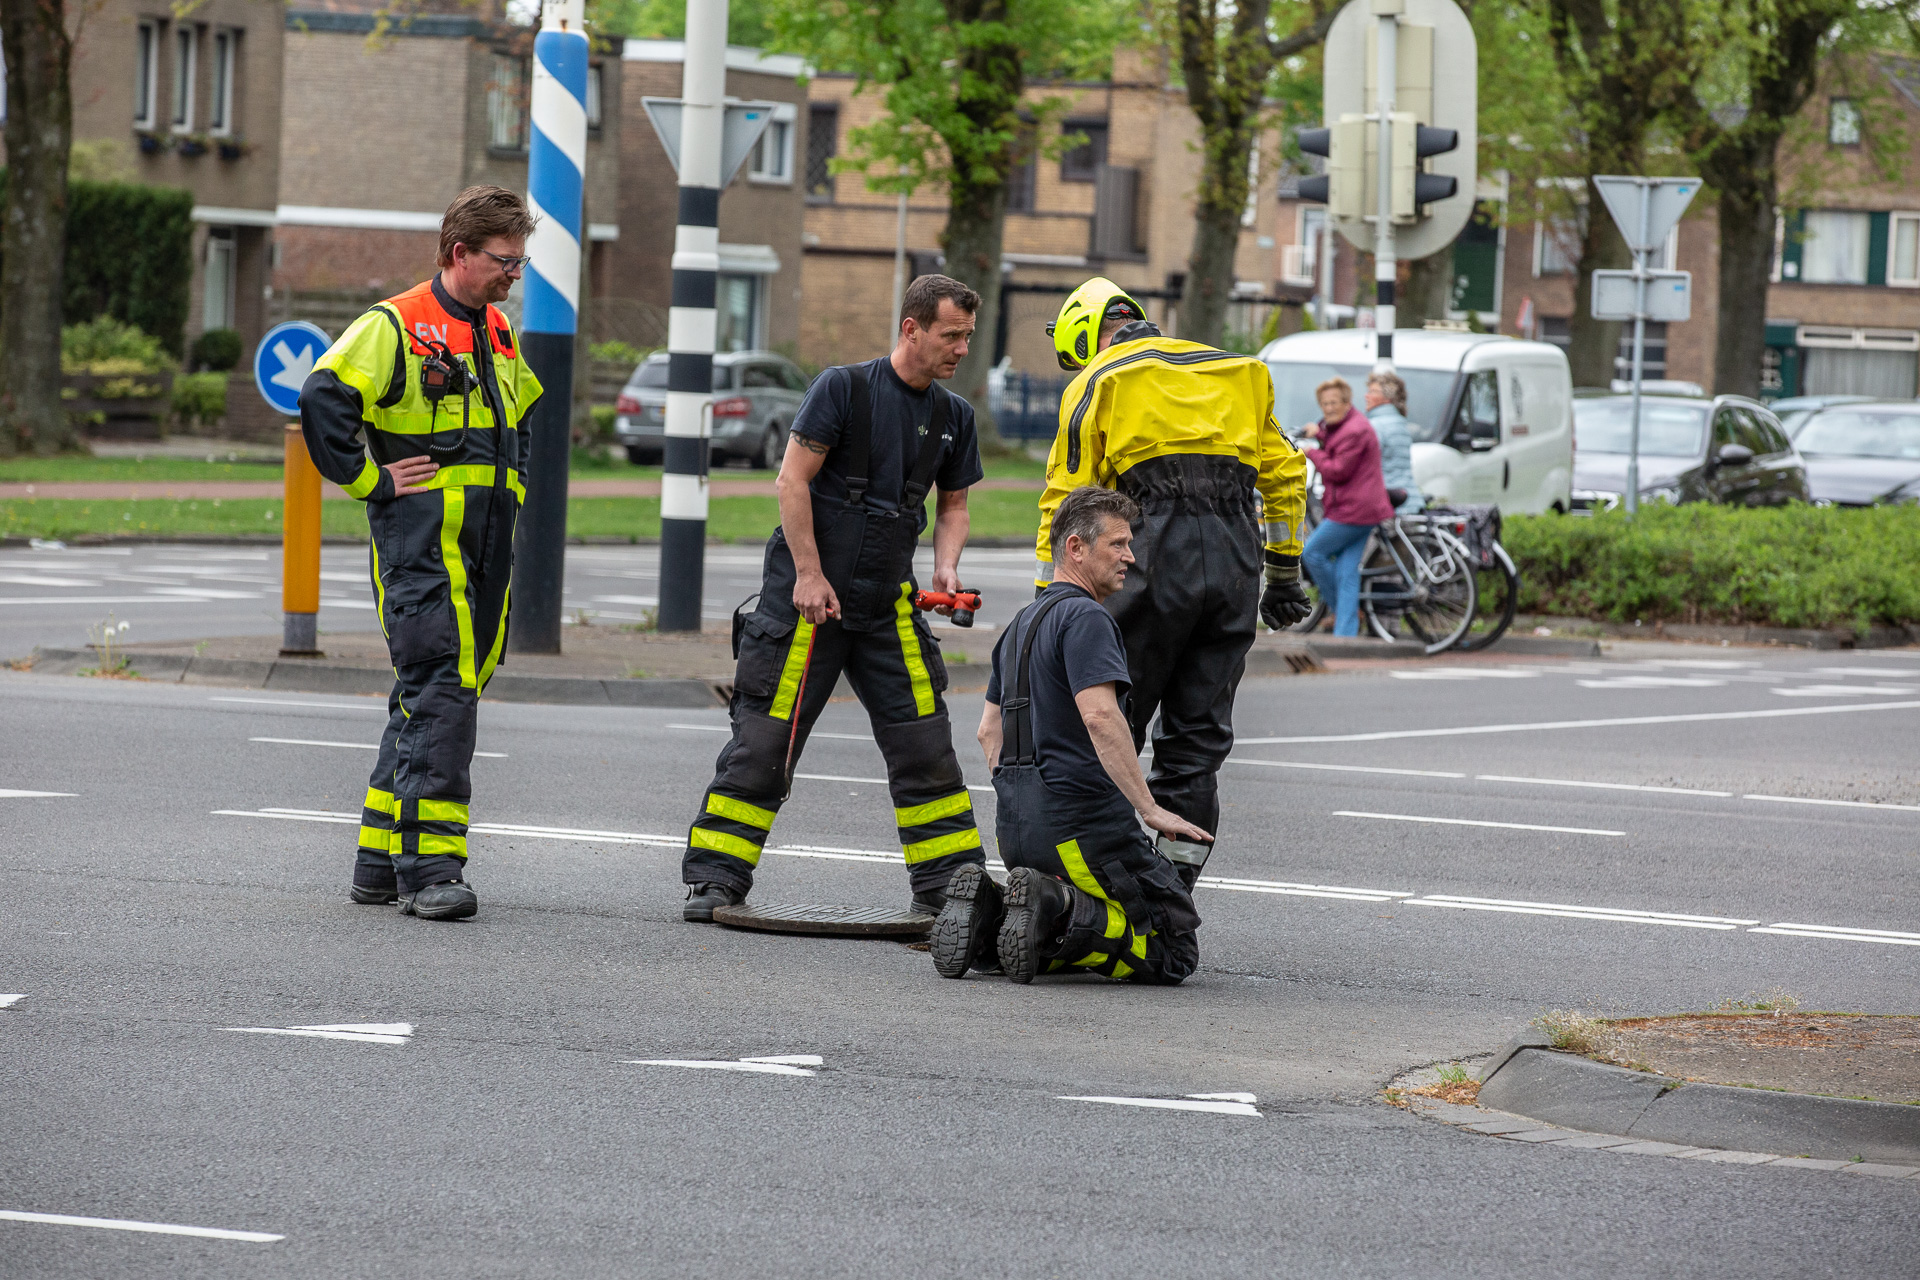 Brandweer redt vier jonge eendjes uit riool in Roosendaal